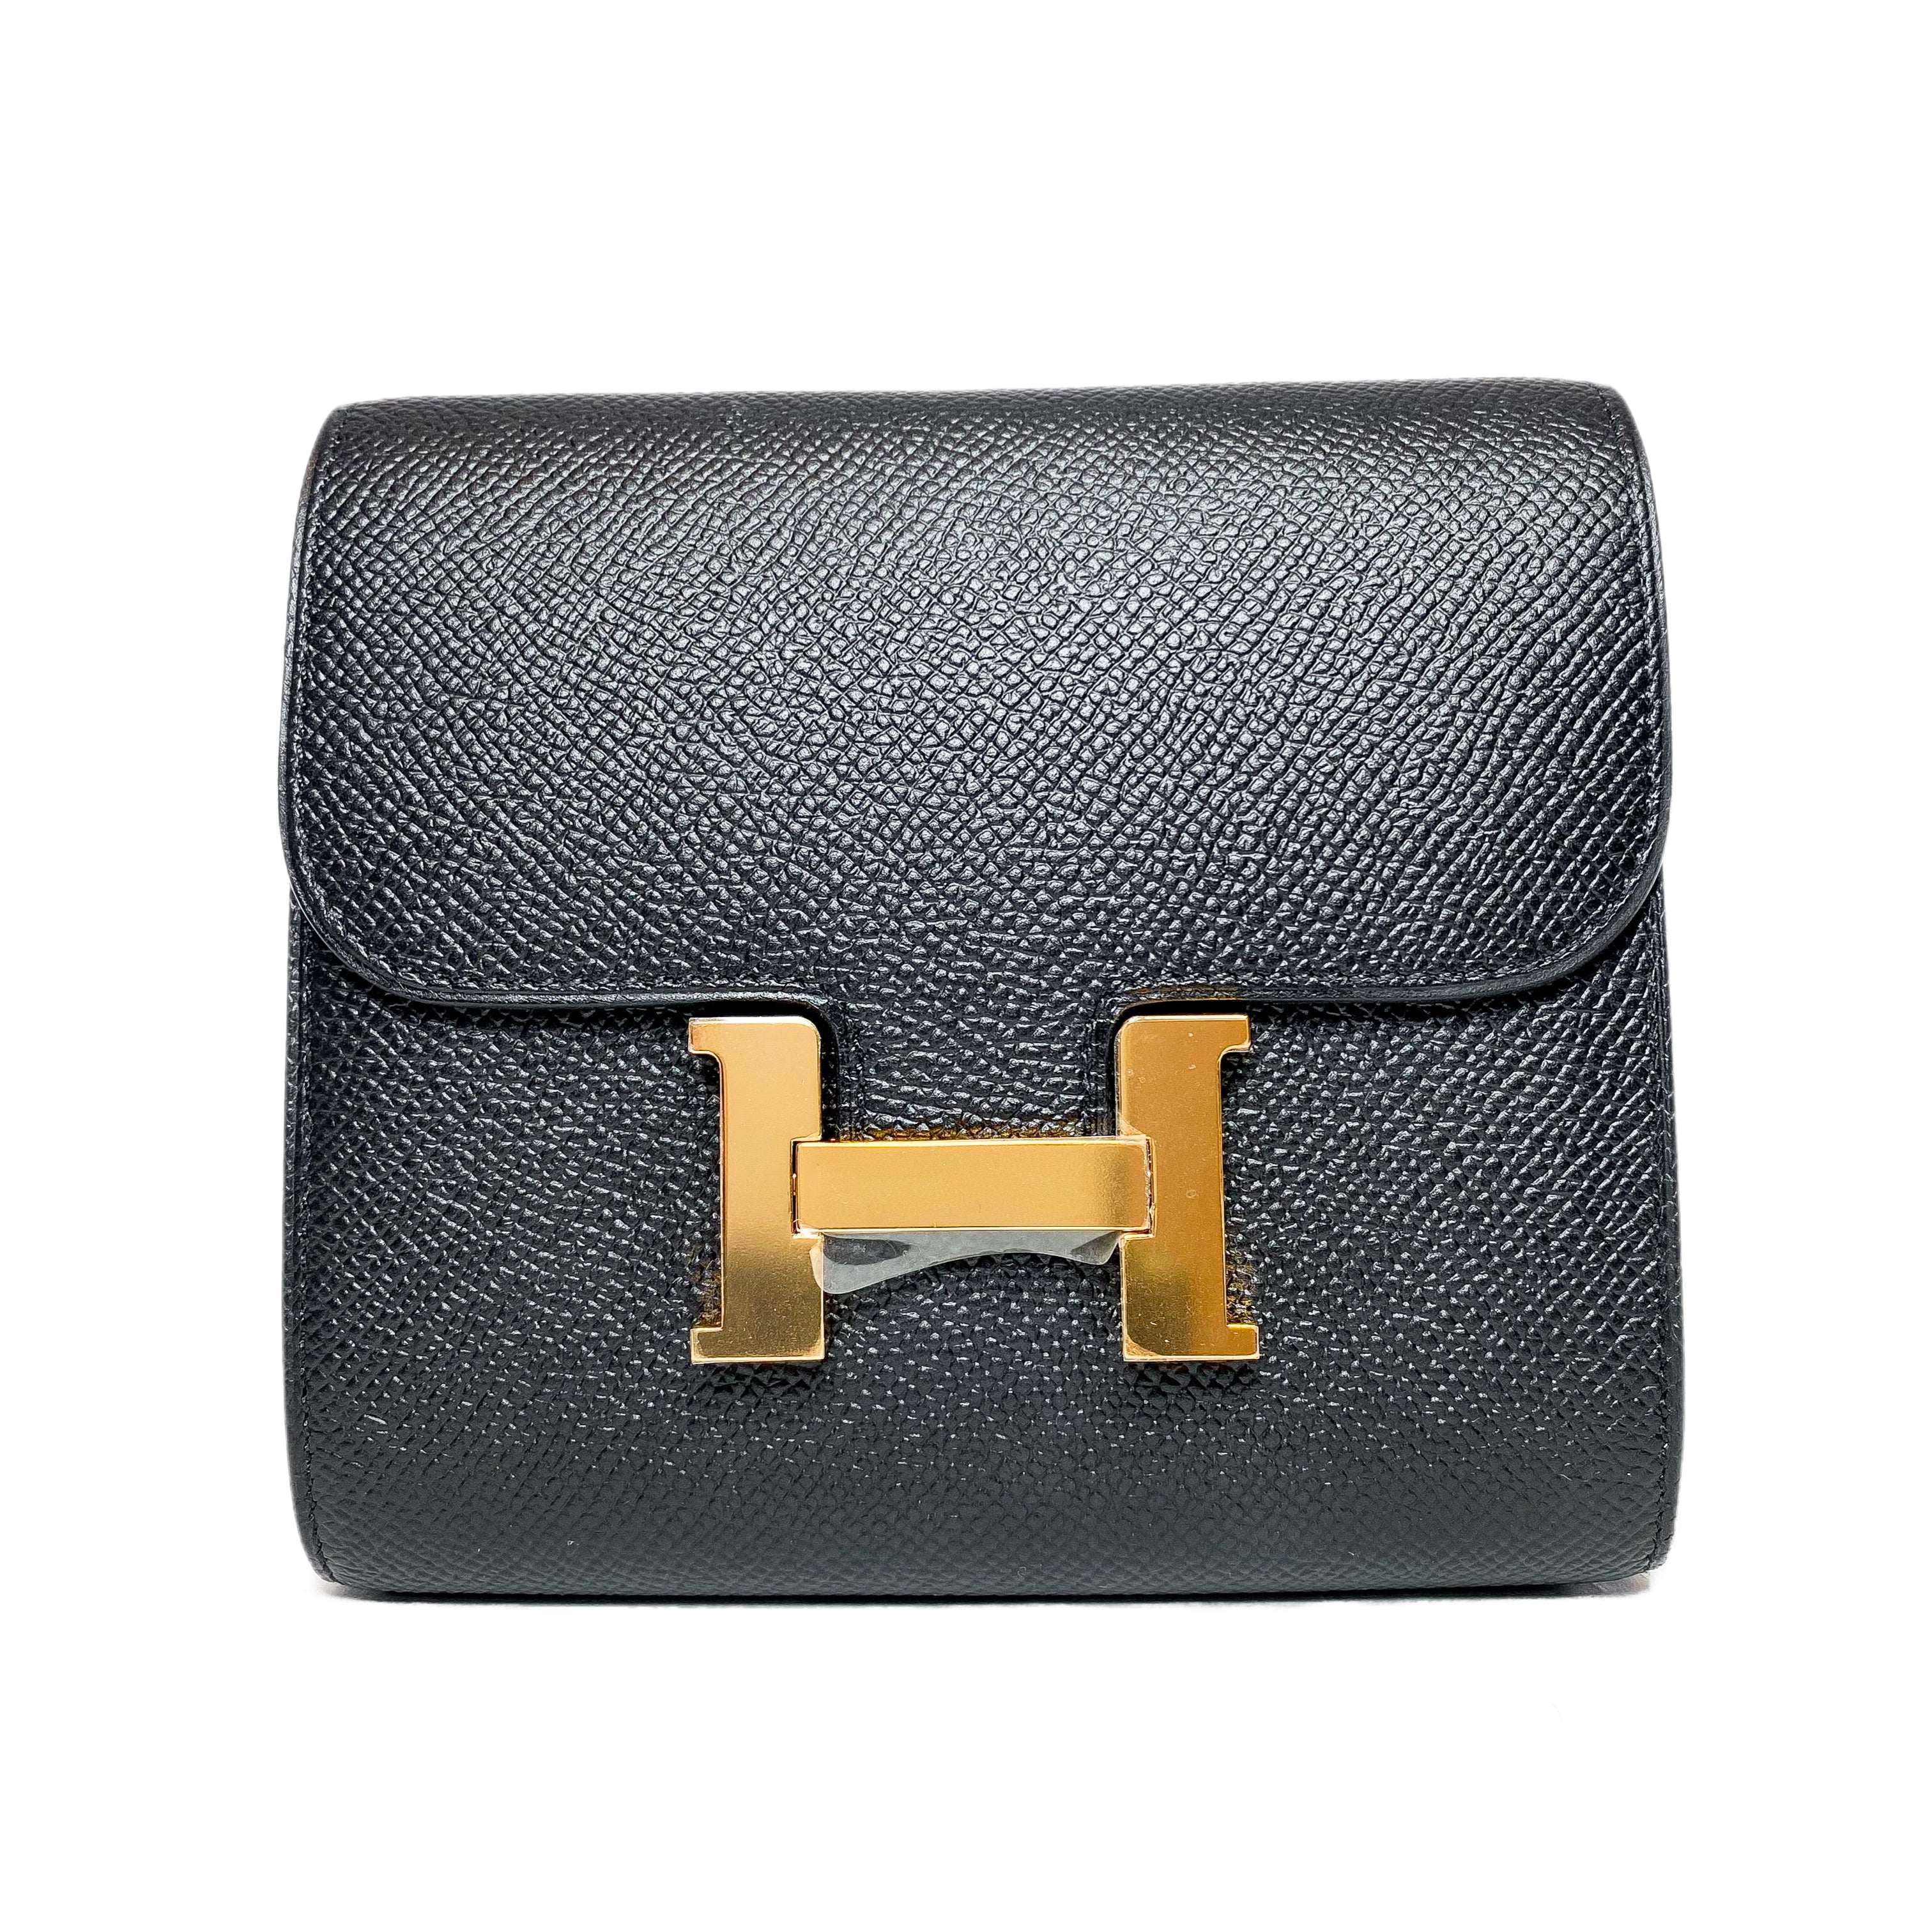 Hermes Constance Compact Wallet Black Epsom Rose Gold Hardware